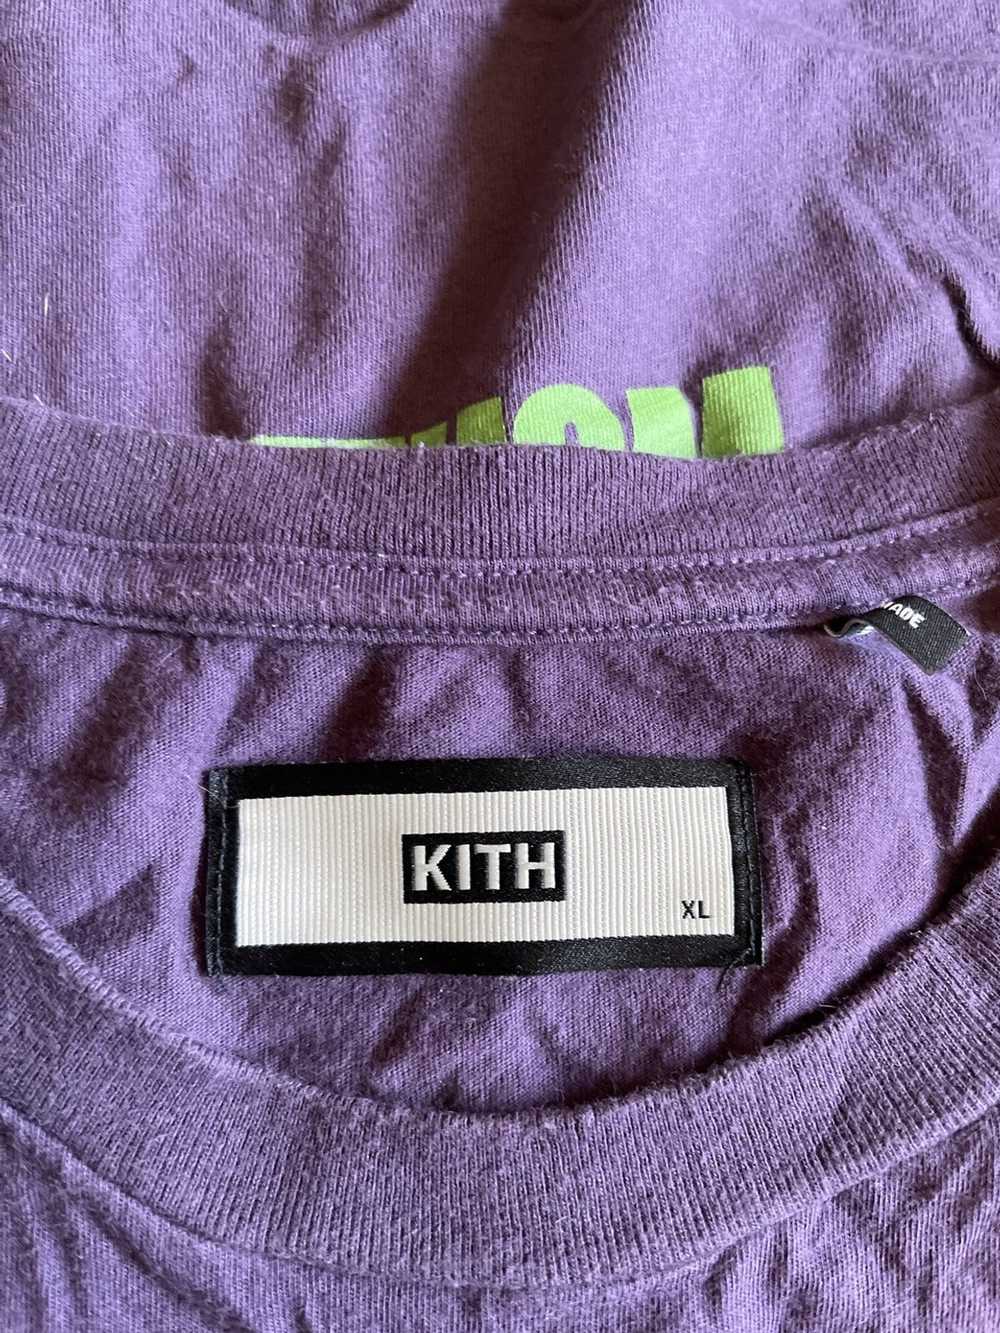 Kith × Ronnie Fieg Kith World Tour Tee - image 3